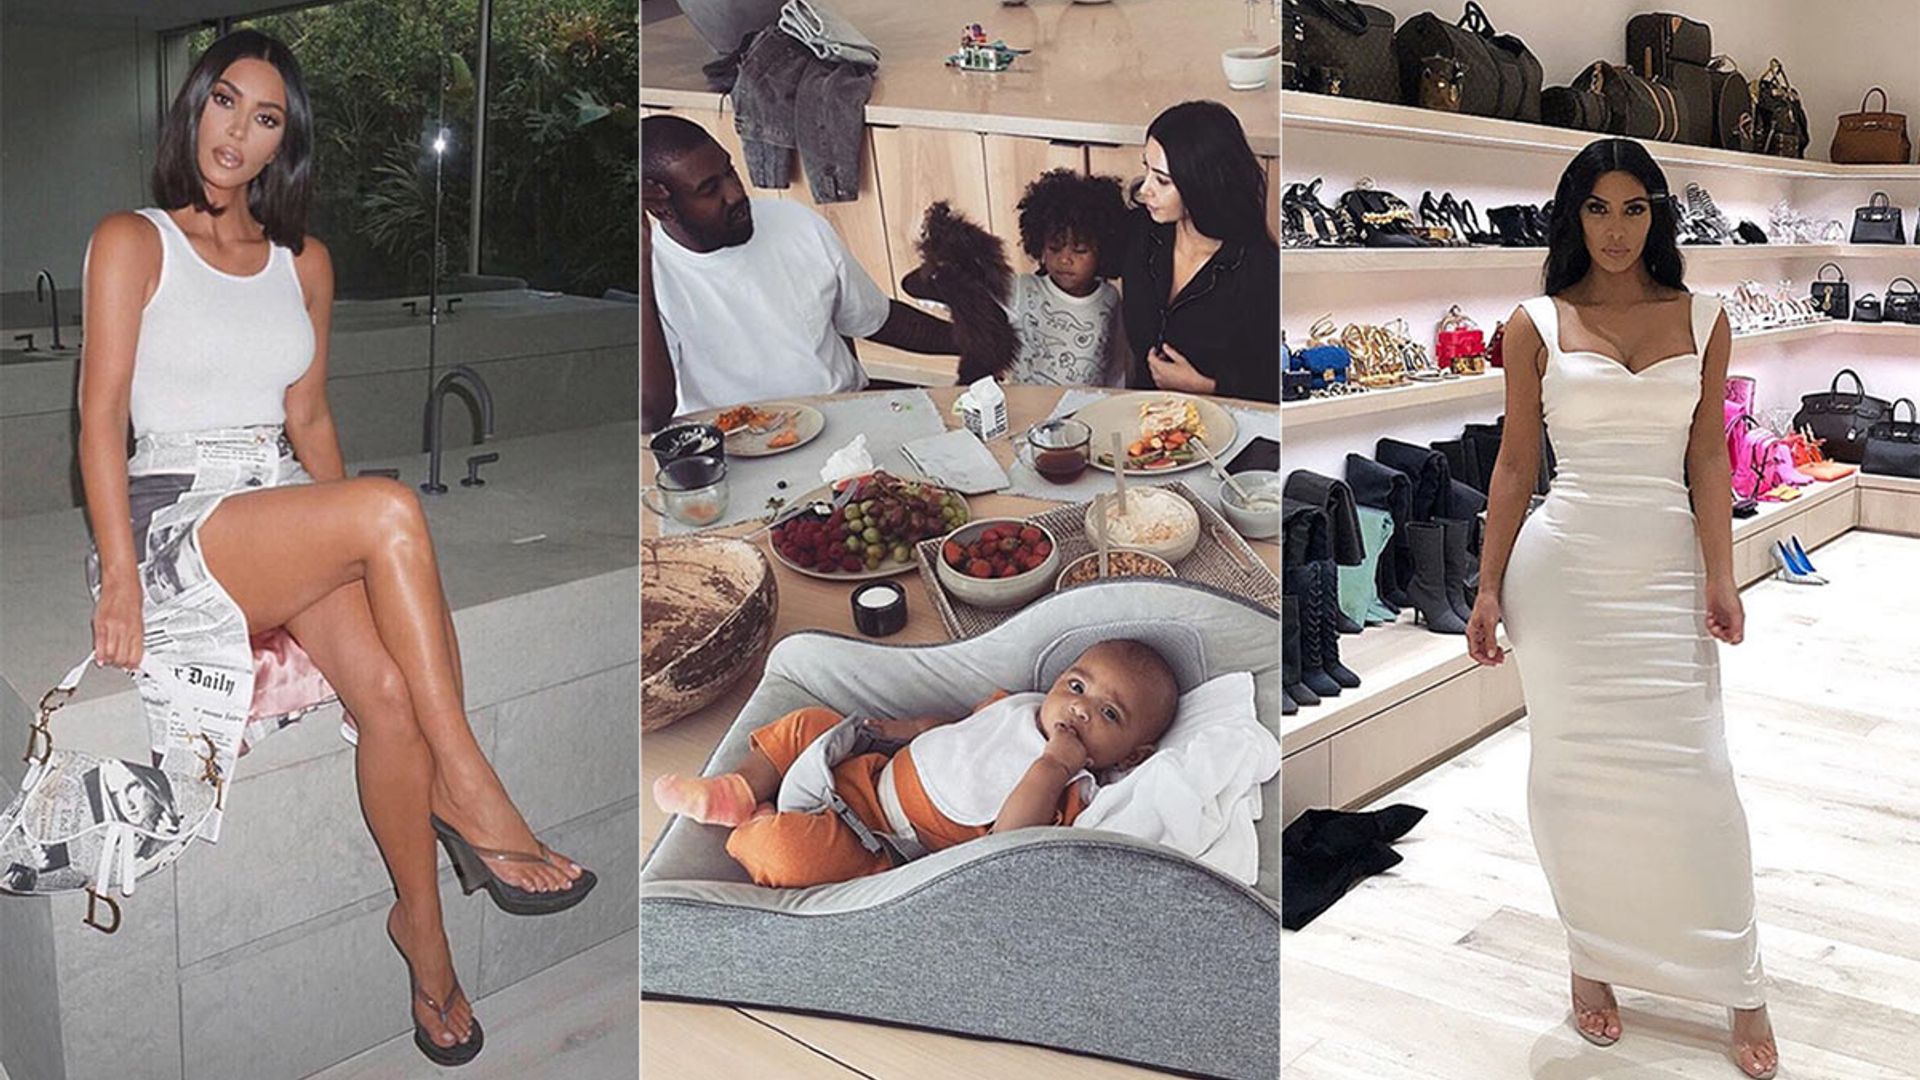 Kanye West Shares Photo of His Epic Shoe Closet